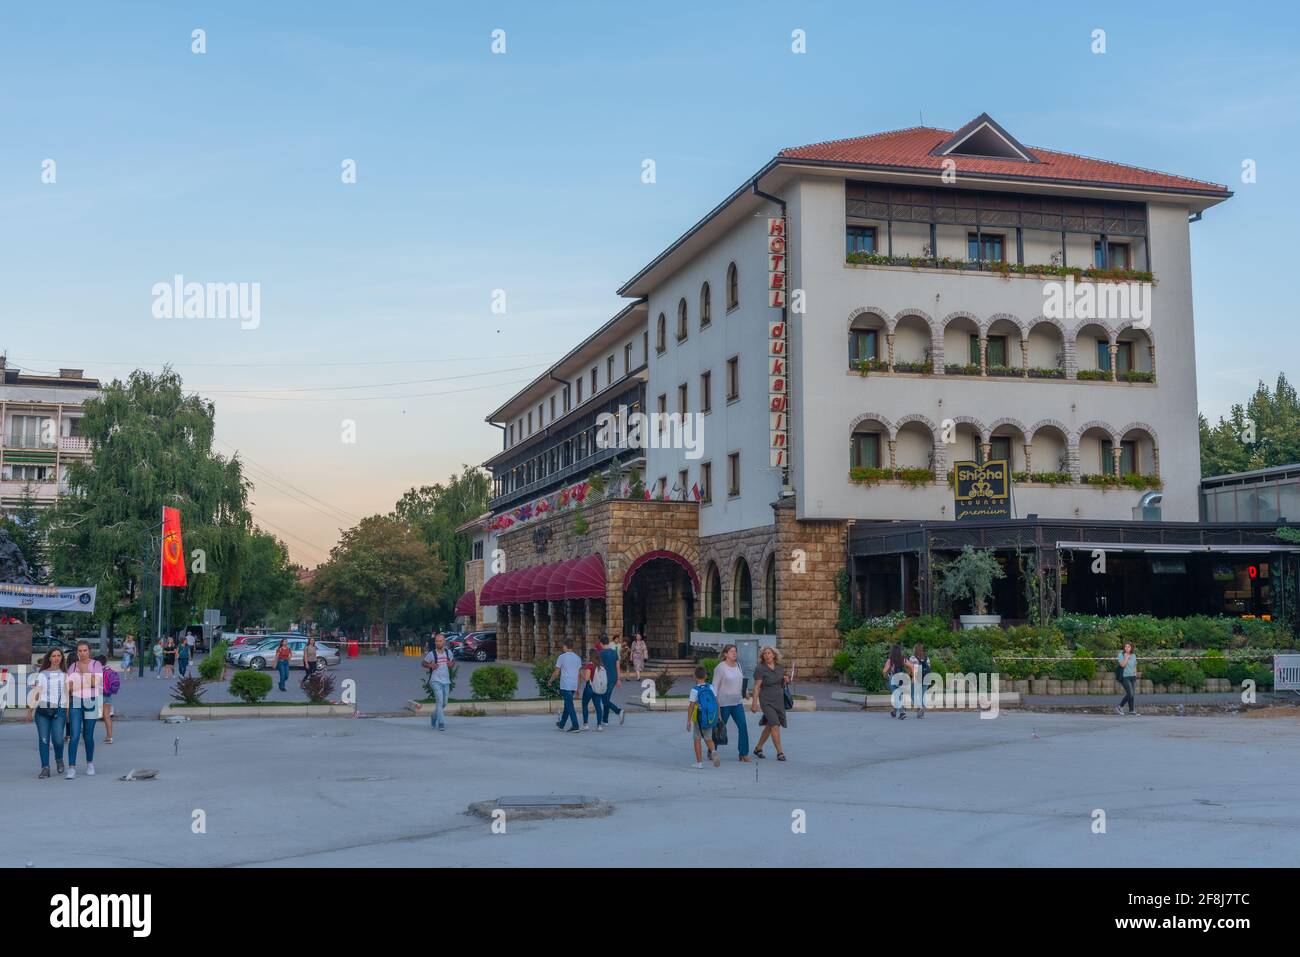 PEJA, KOSOVO, 17 SEPTEMBRE 2019 : Hôtel Dukagjini à la place principale de Peja, Kosovo Banque D'Images